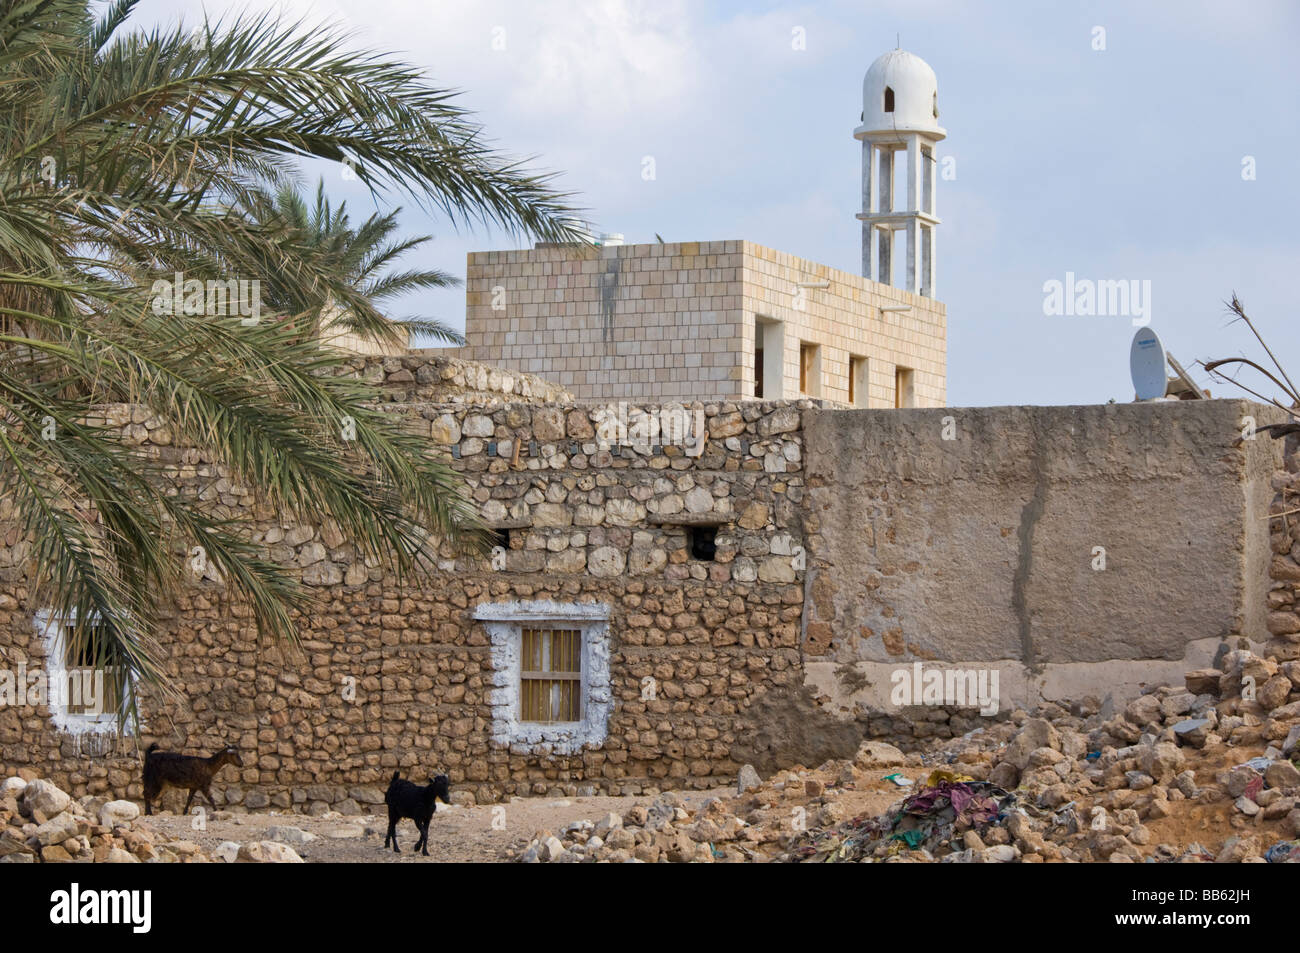 Qalansiyah village Socotra Yemen Stock Photo